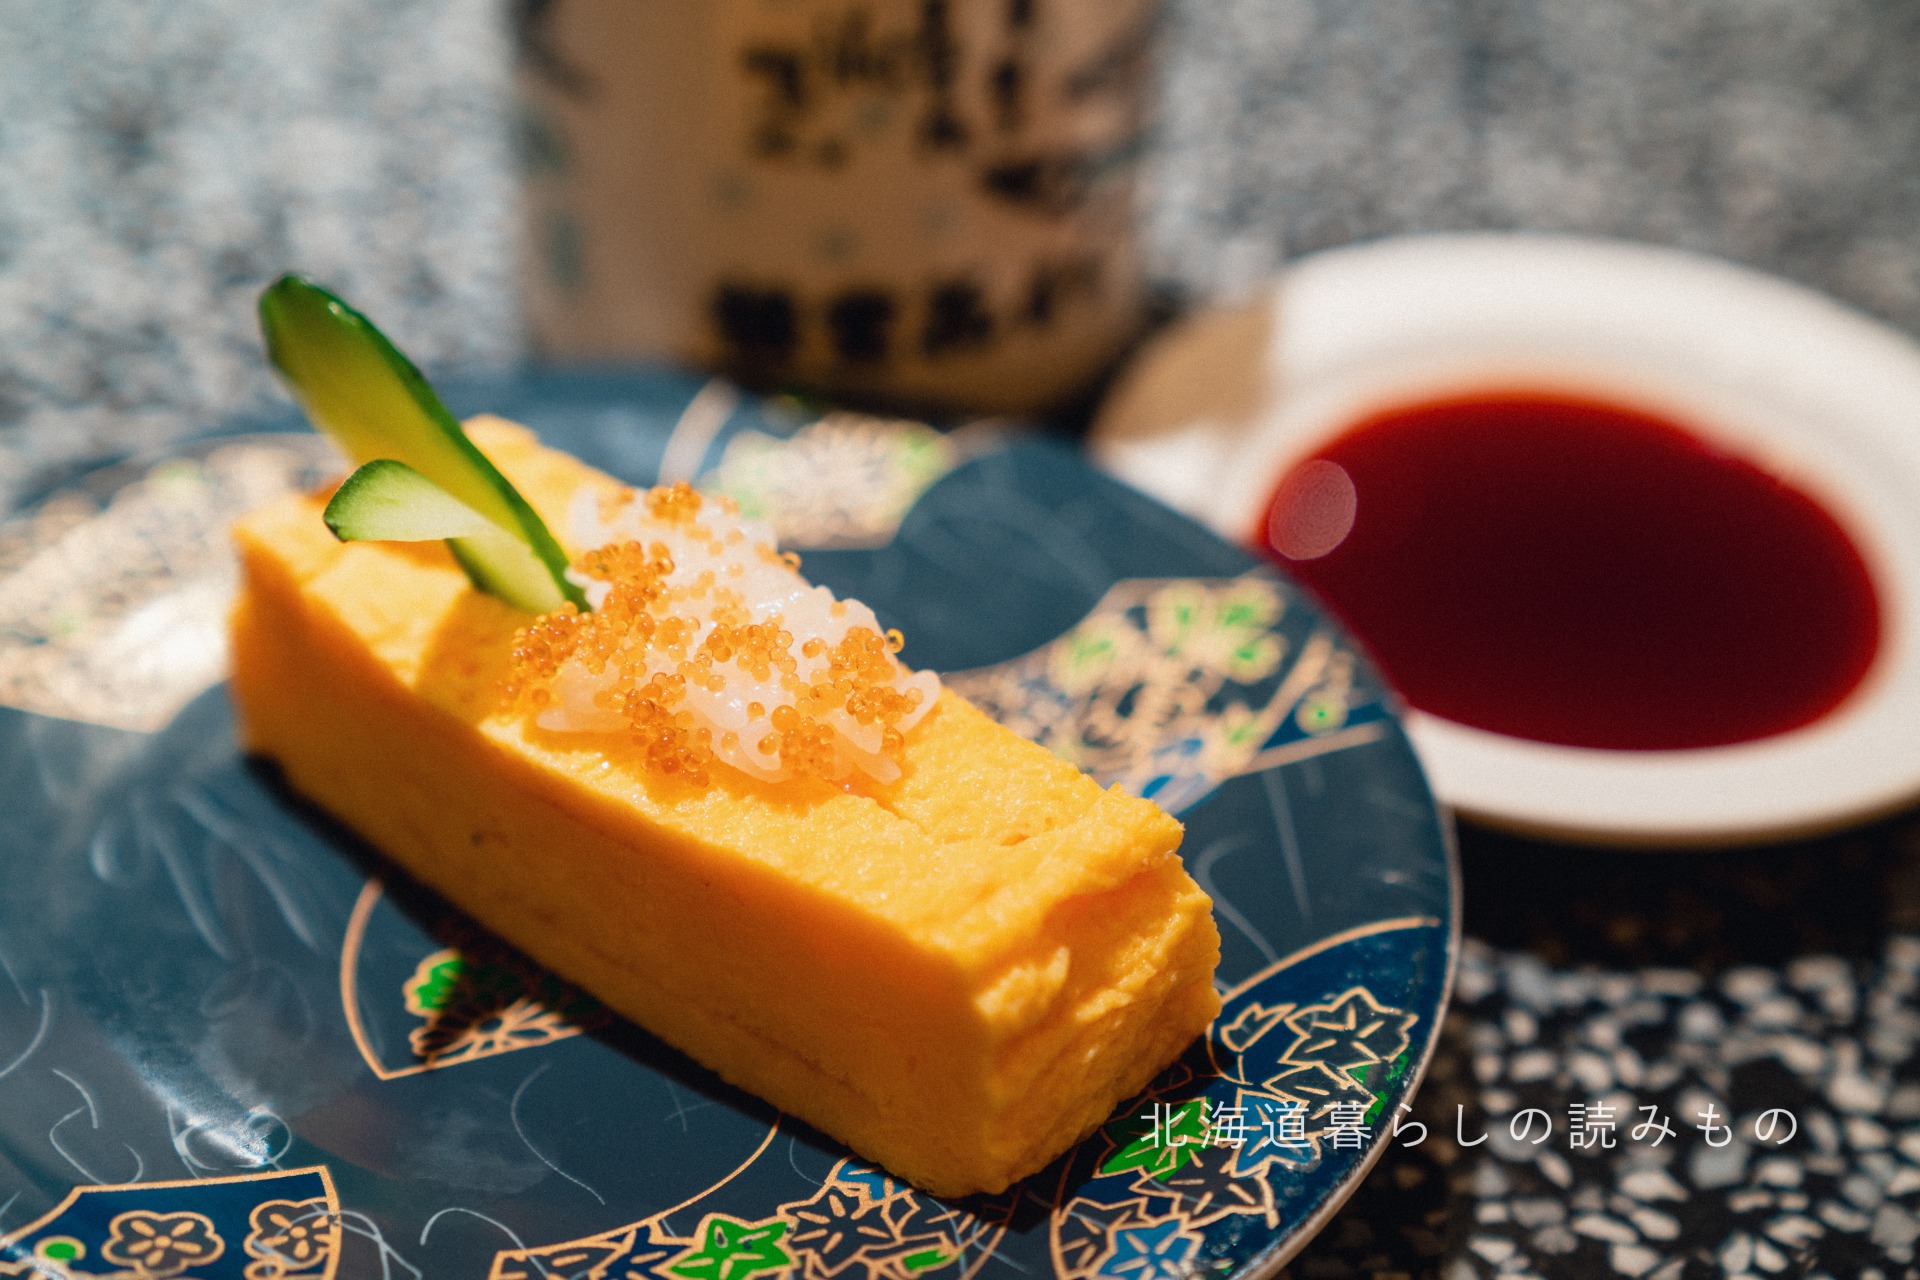 迴轉壽司根室花丸的菜單上的「Japanese Rolled Omelet」